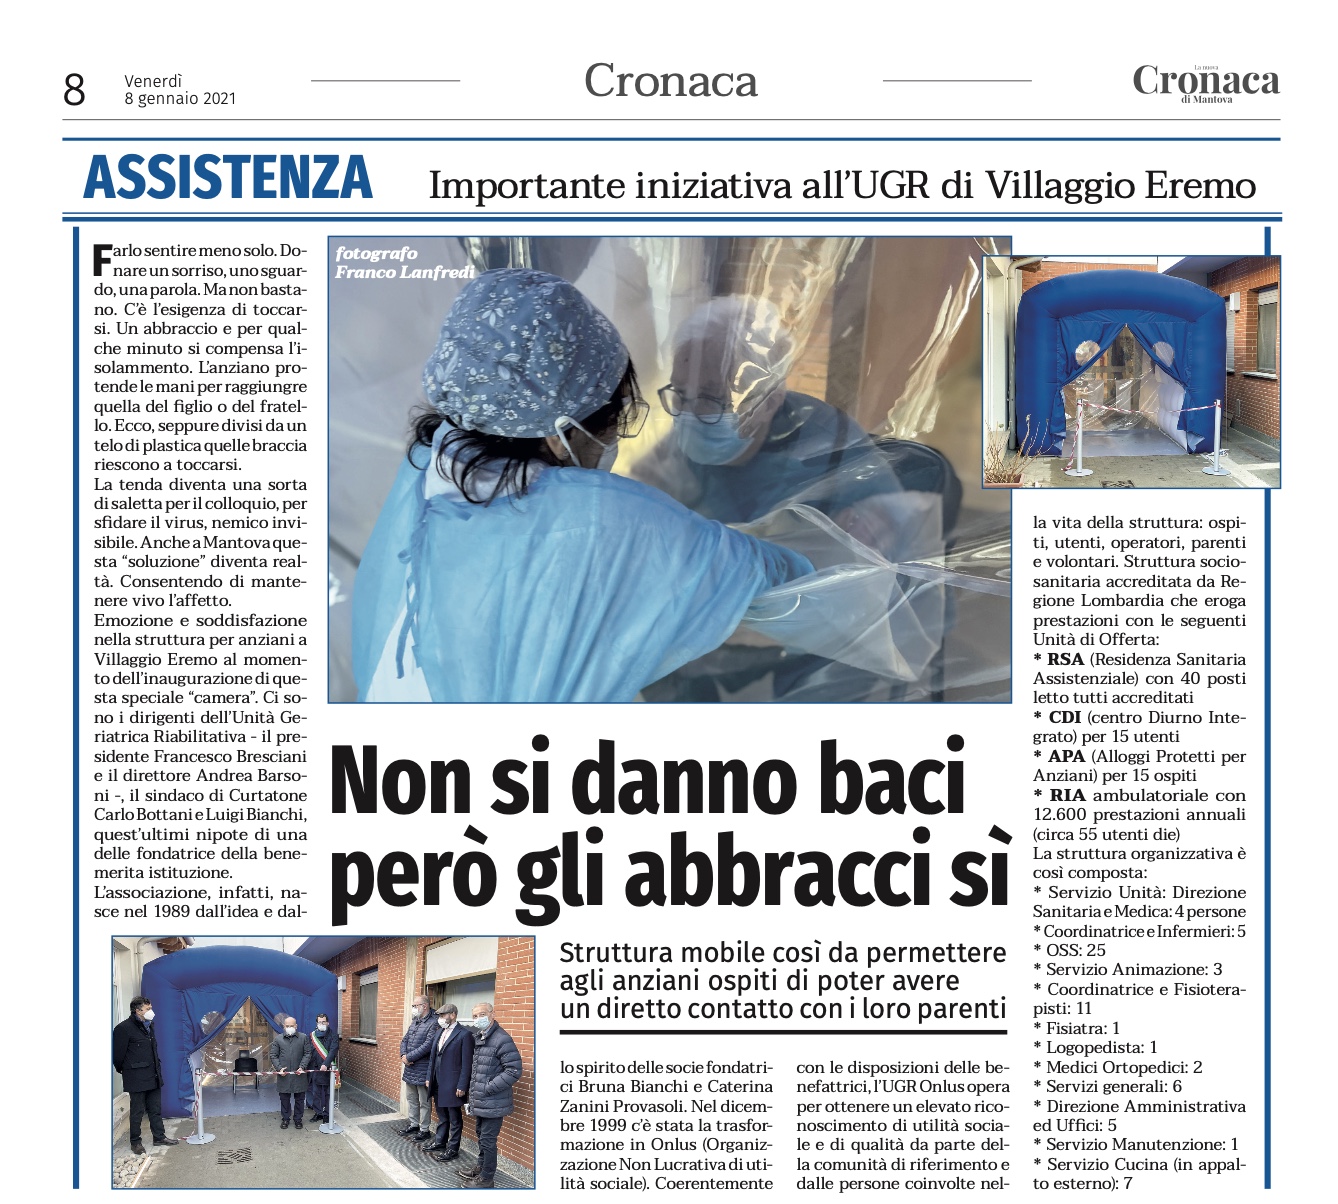 Ringraziamo il direttore Werther Gorni per l’interessante articolo uscito ieri a pagina 8 del settimanale La nuova Cronaca di Mantova.